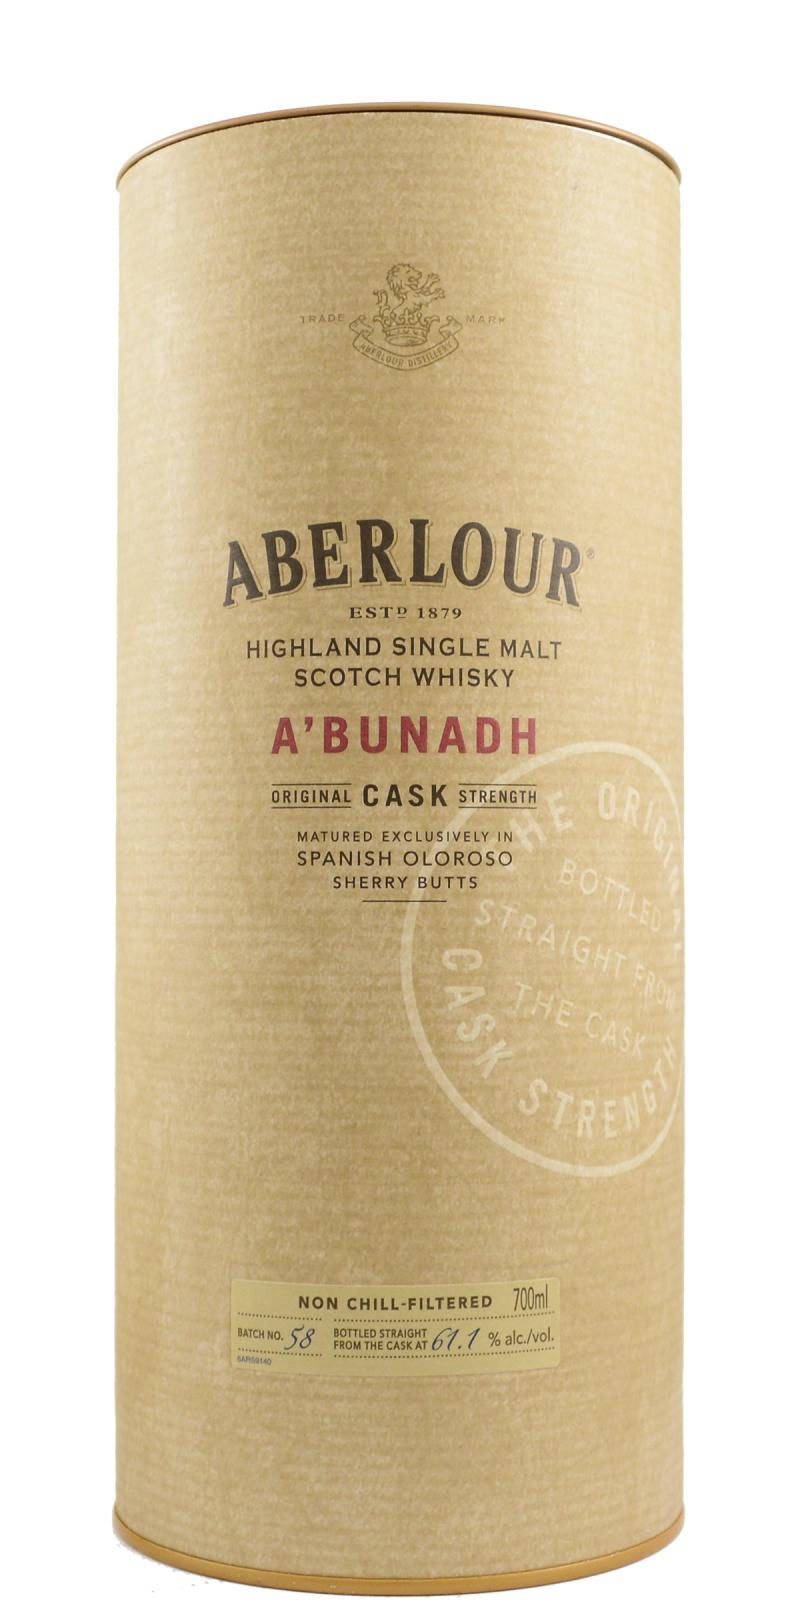 Aberlour A'bunadh batch #58